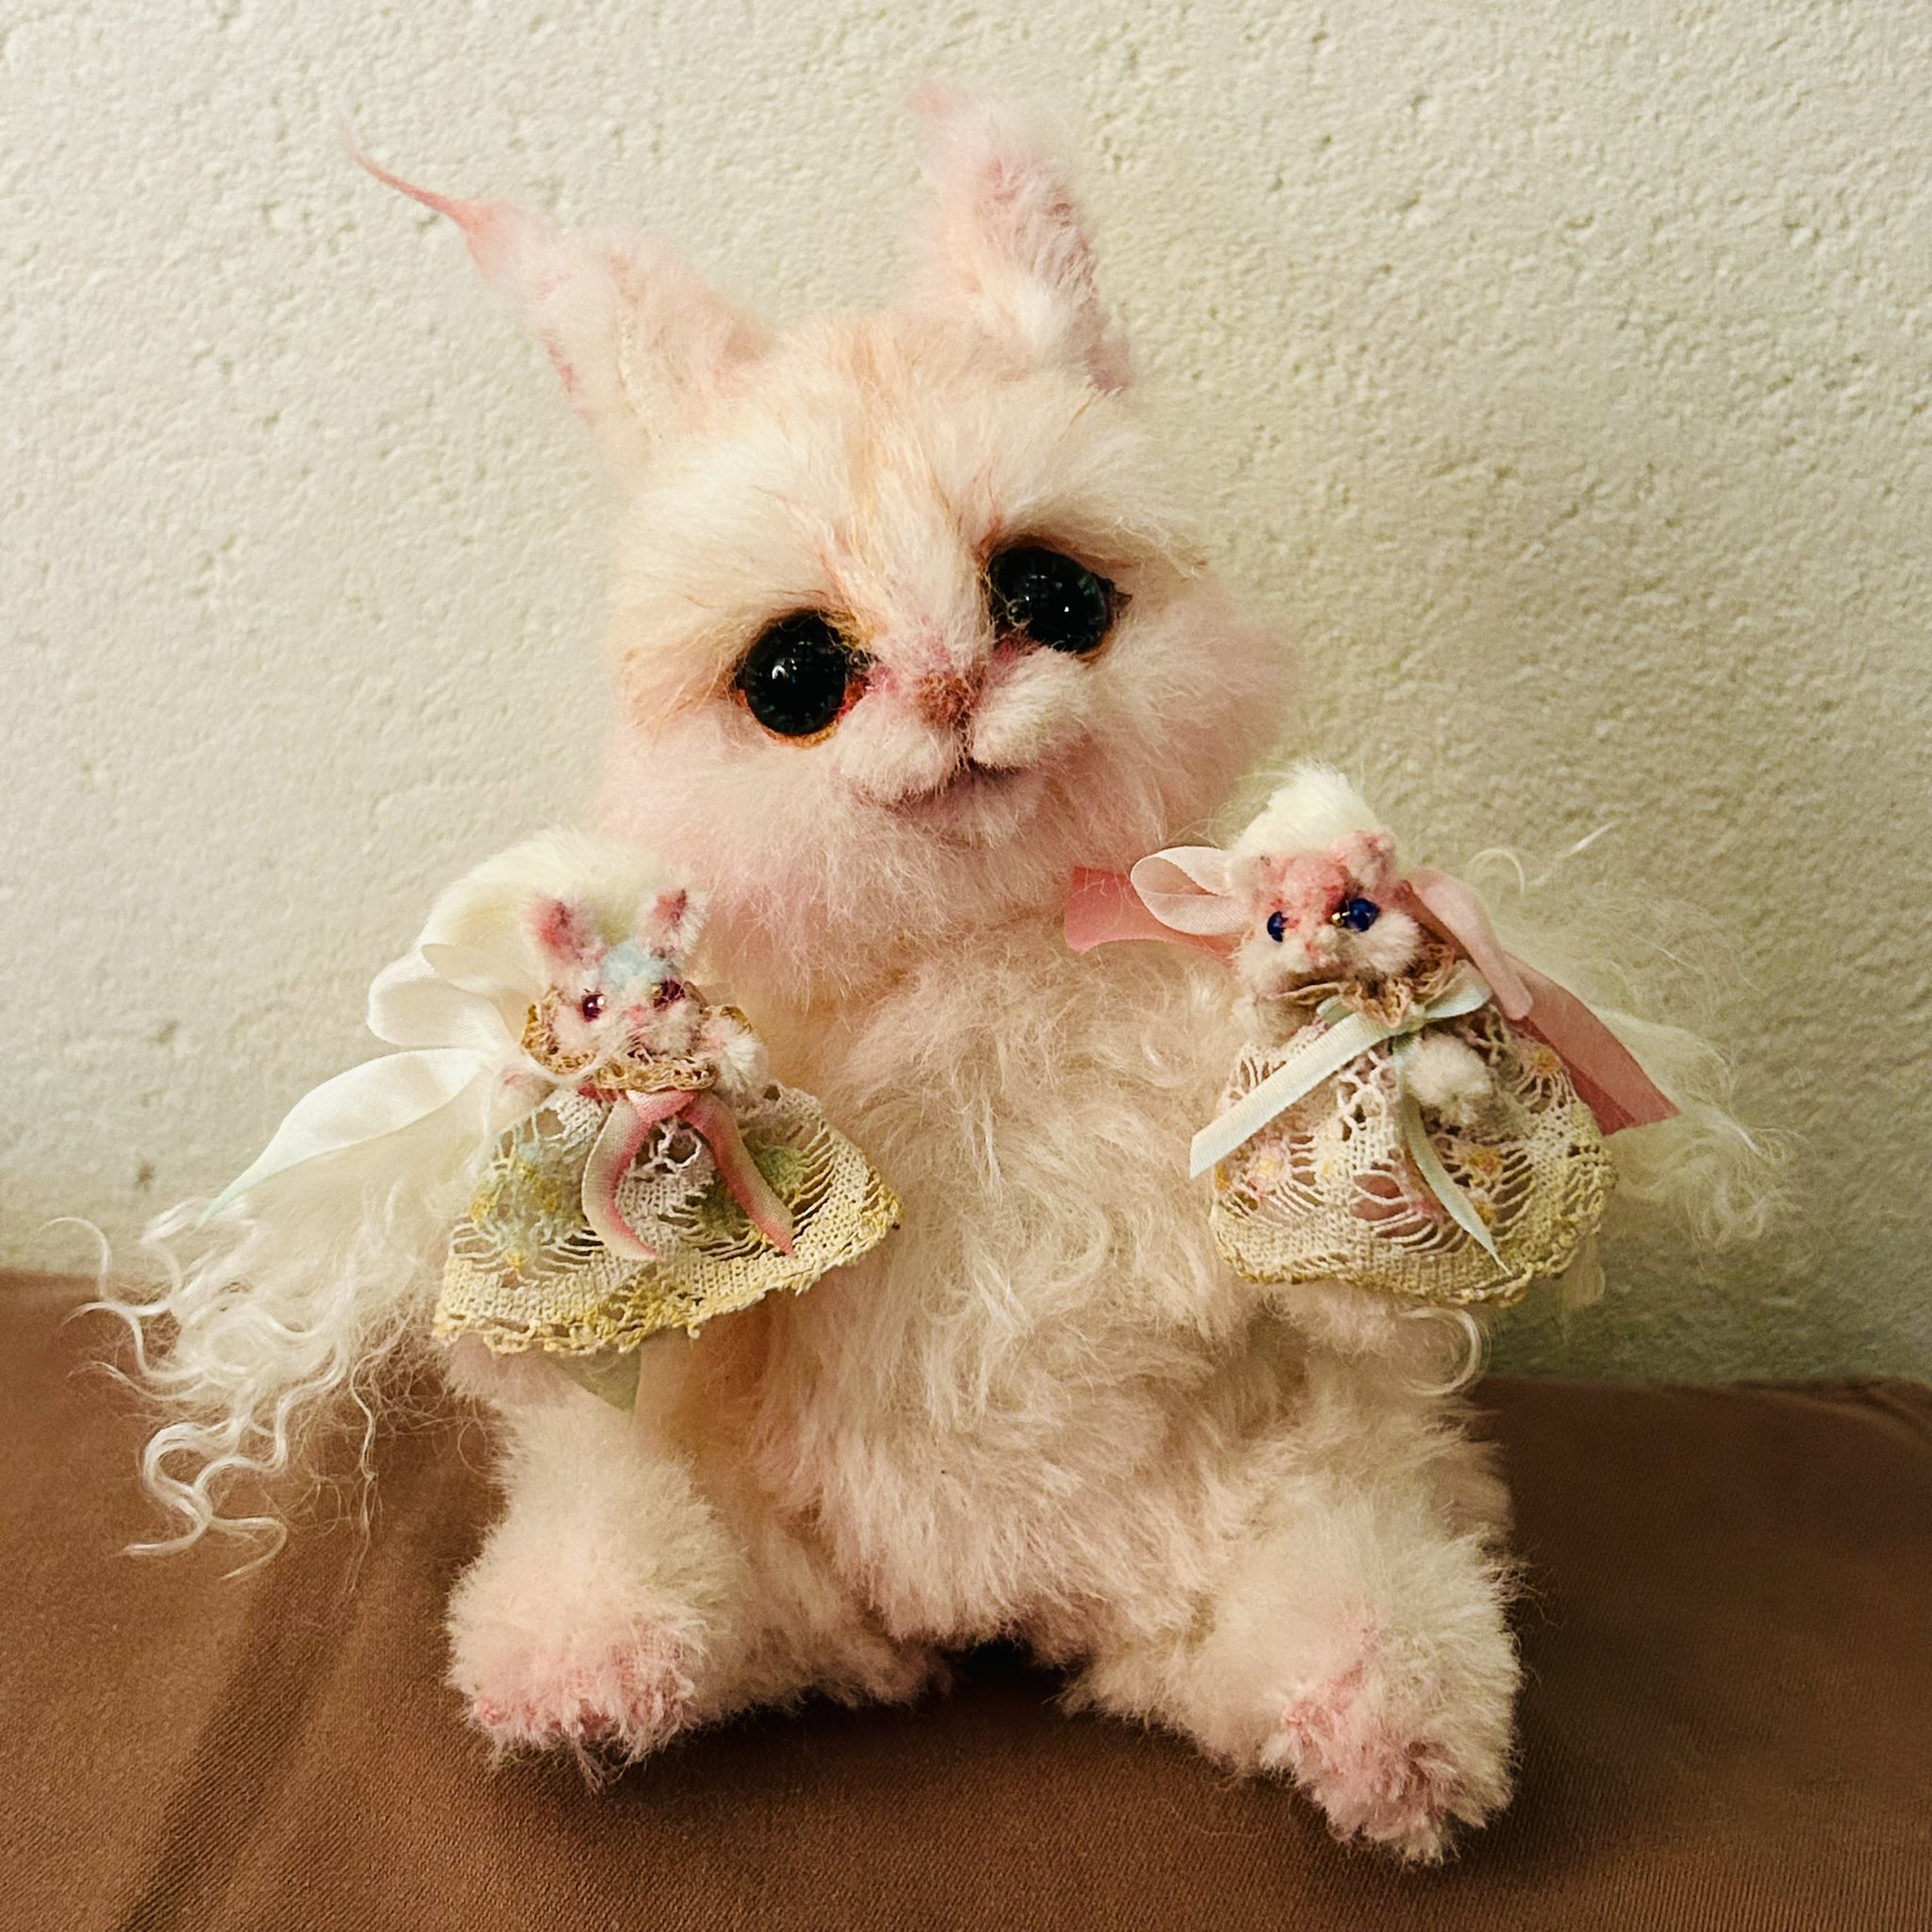 ゴトウユミコさん作品、小さな猫。